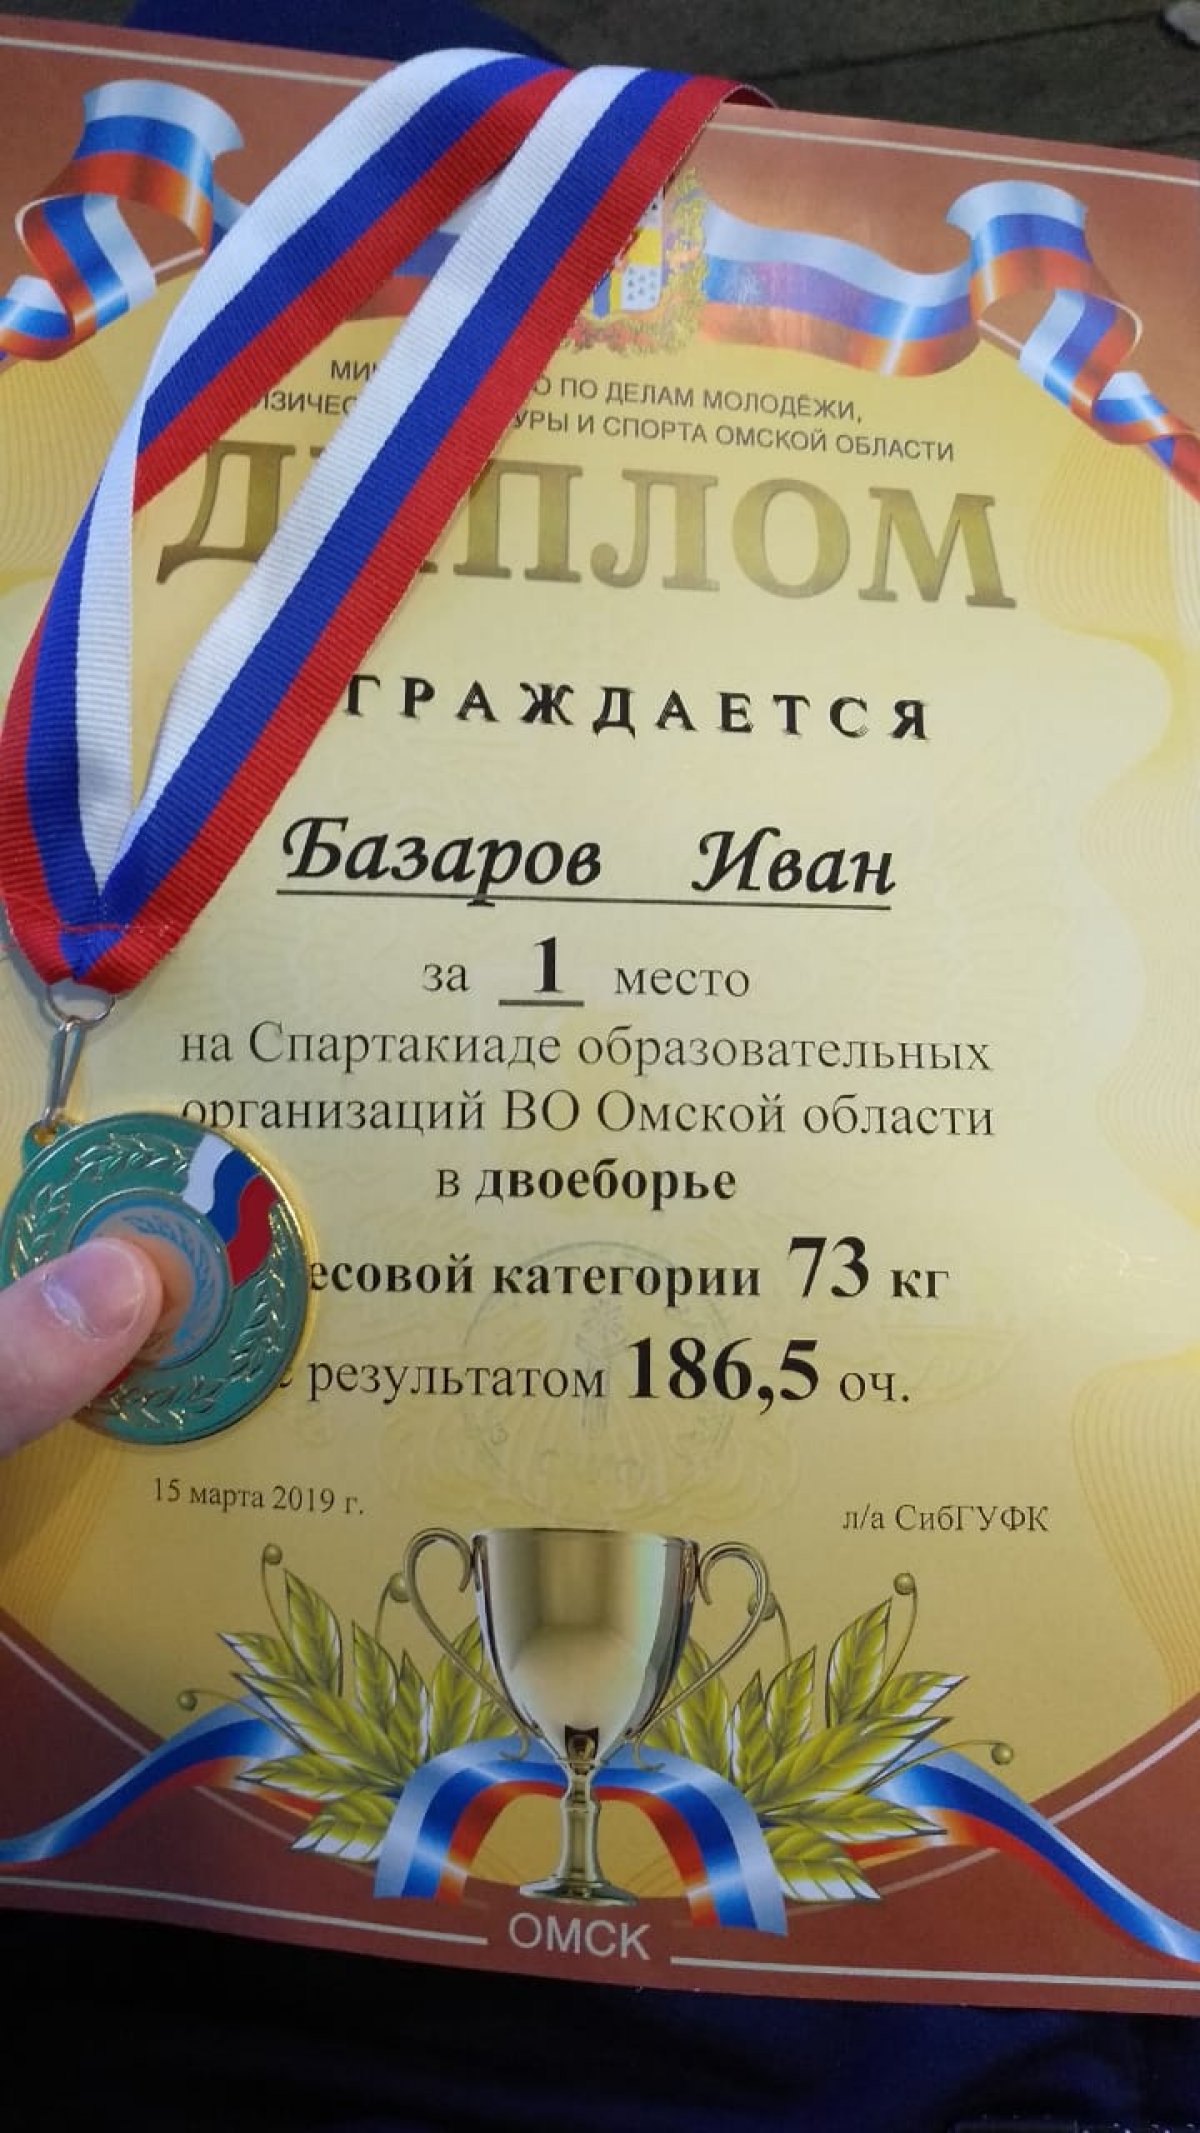 Студент первого курса Омской юридической академии Базаров Иван занял первое место в двоеборье в весовой категории до 73 кг